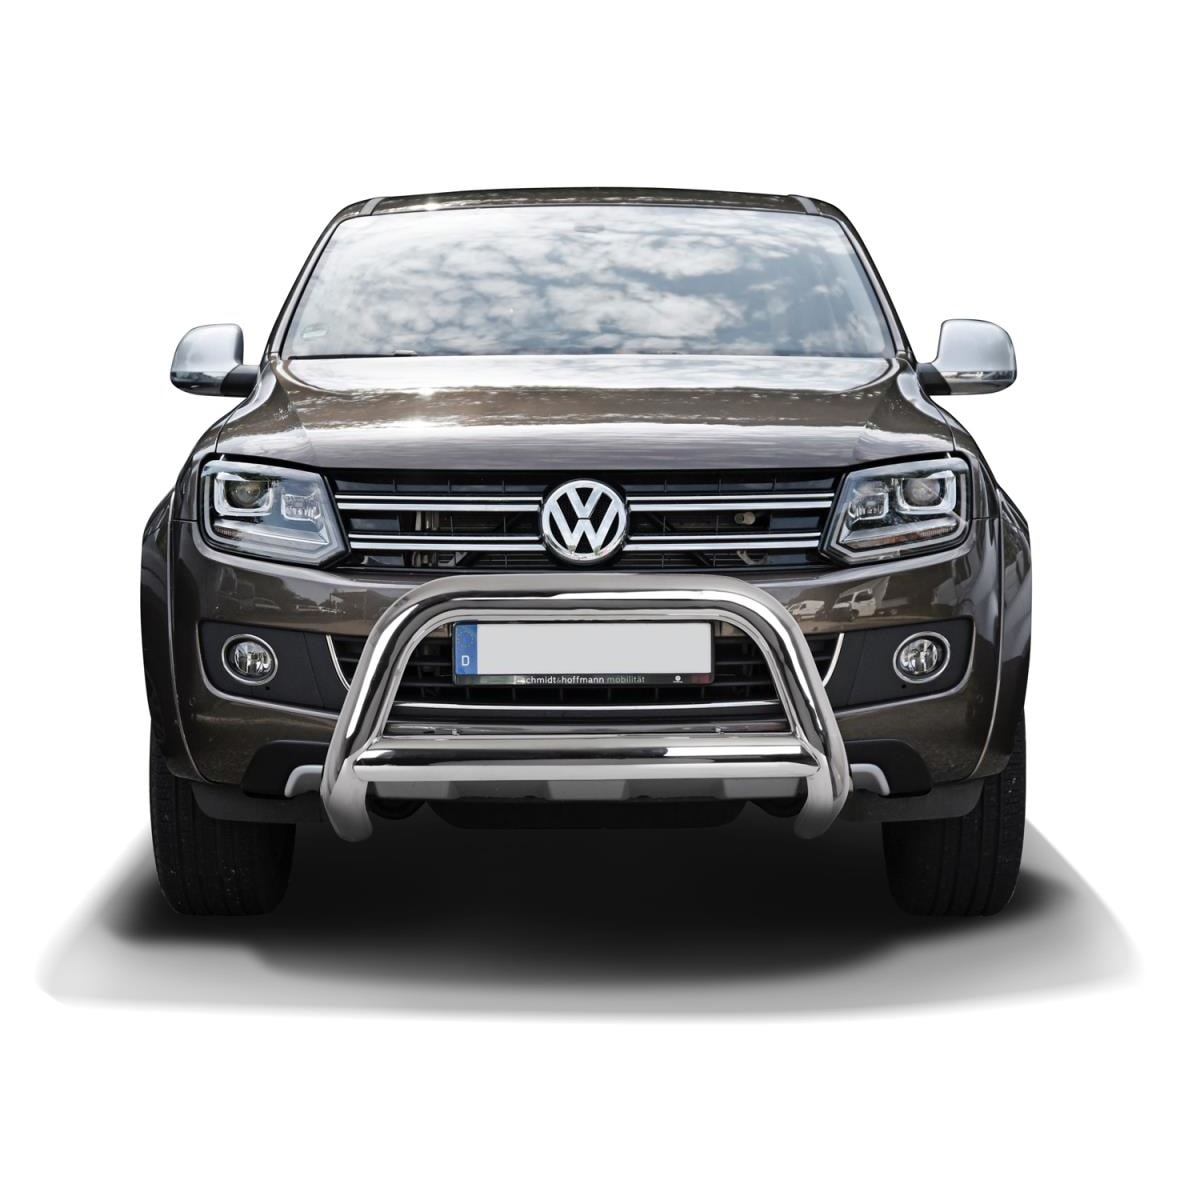 Frontschutzbügel Edelstahlt für VW Amarok - Frontschutzbügel